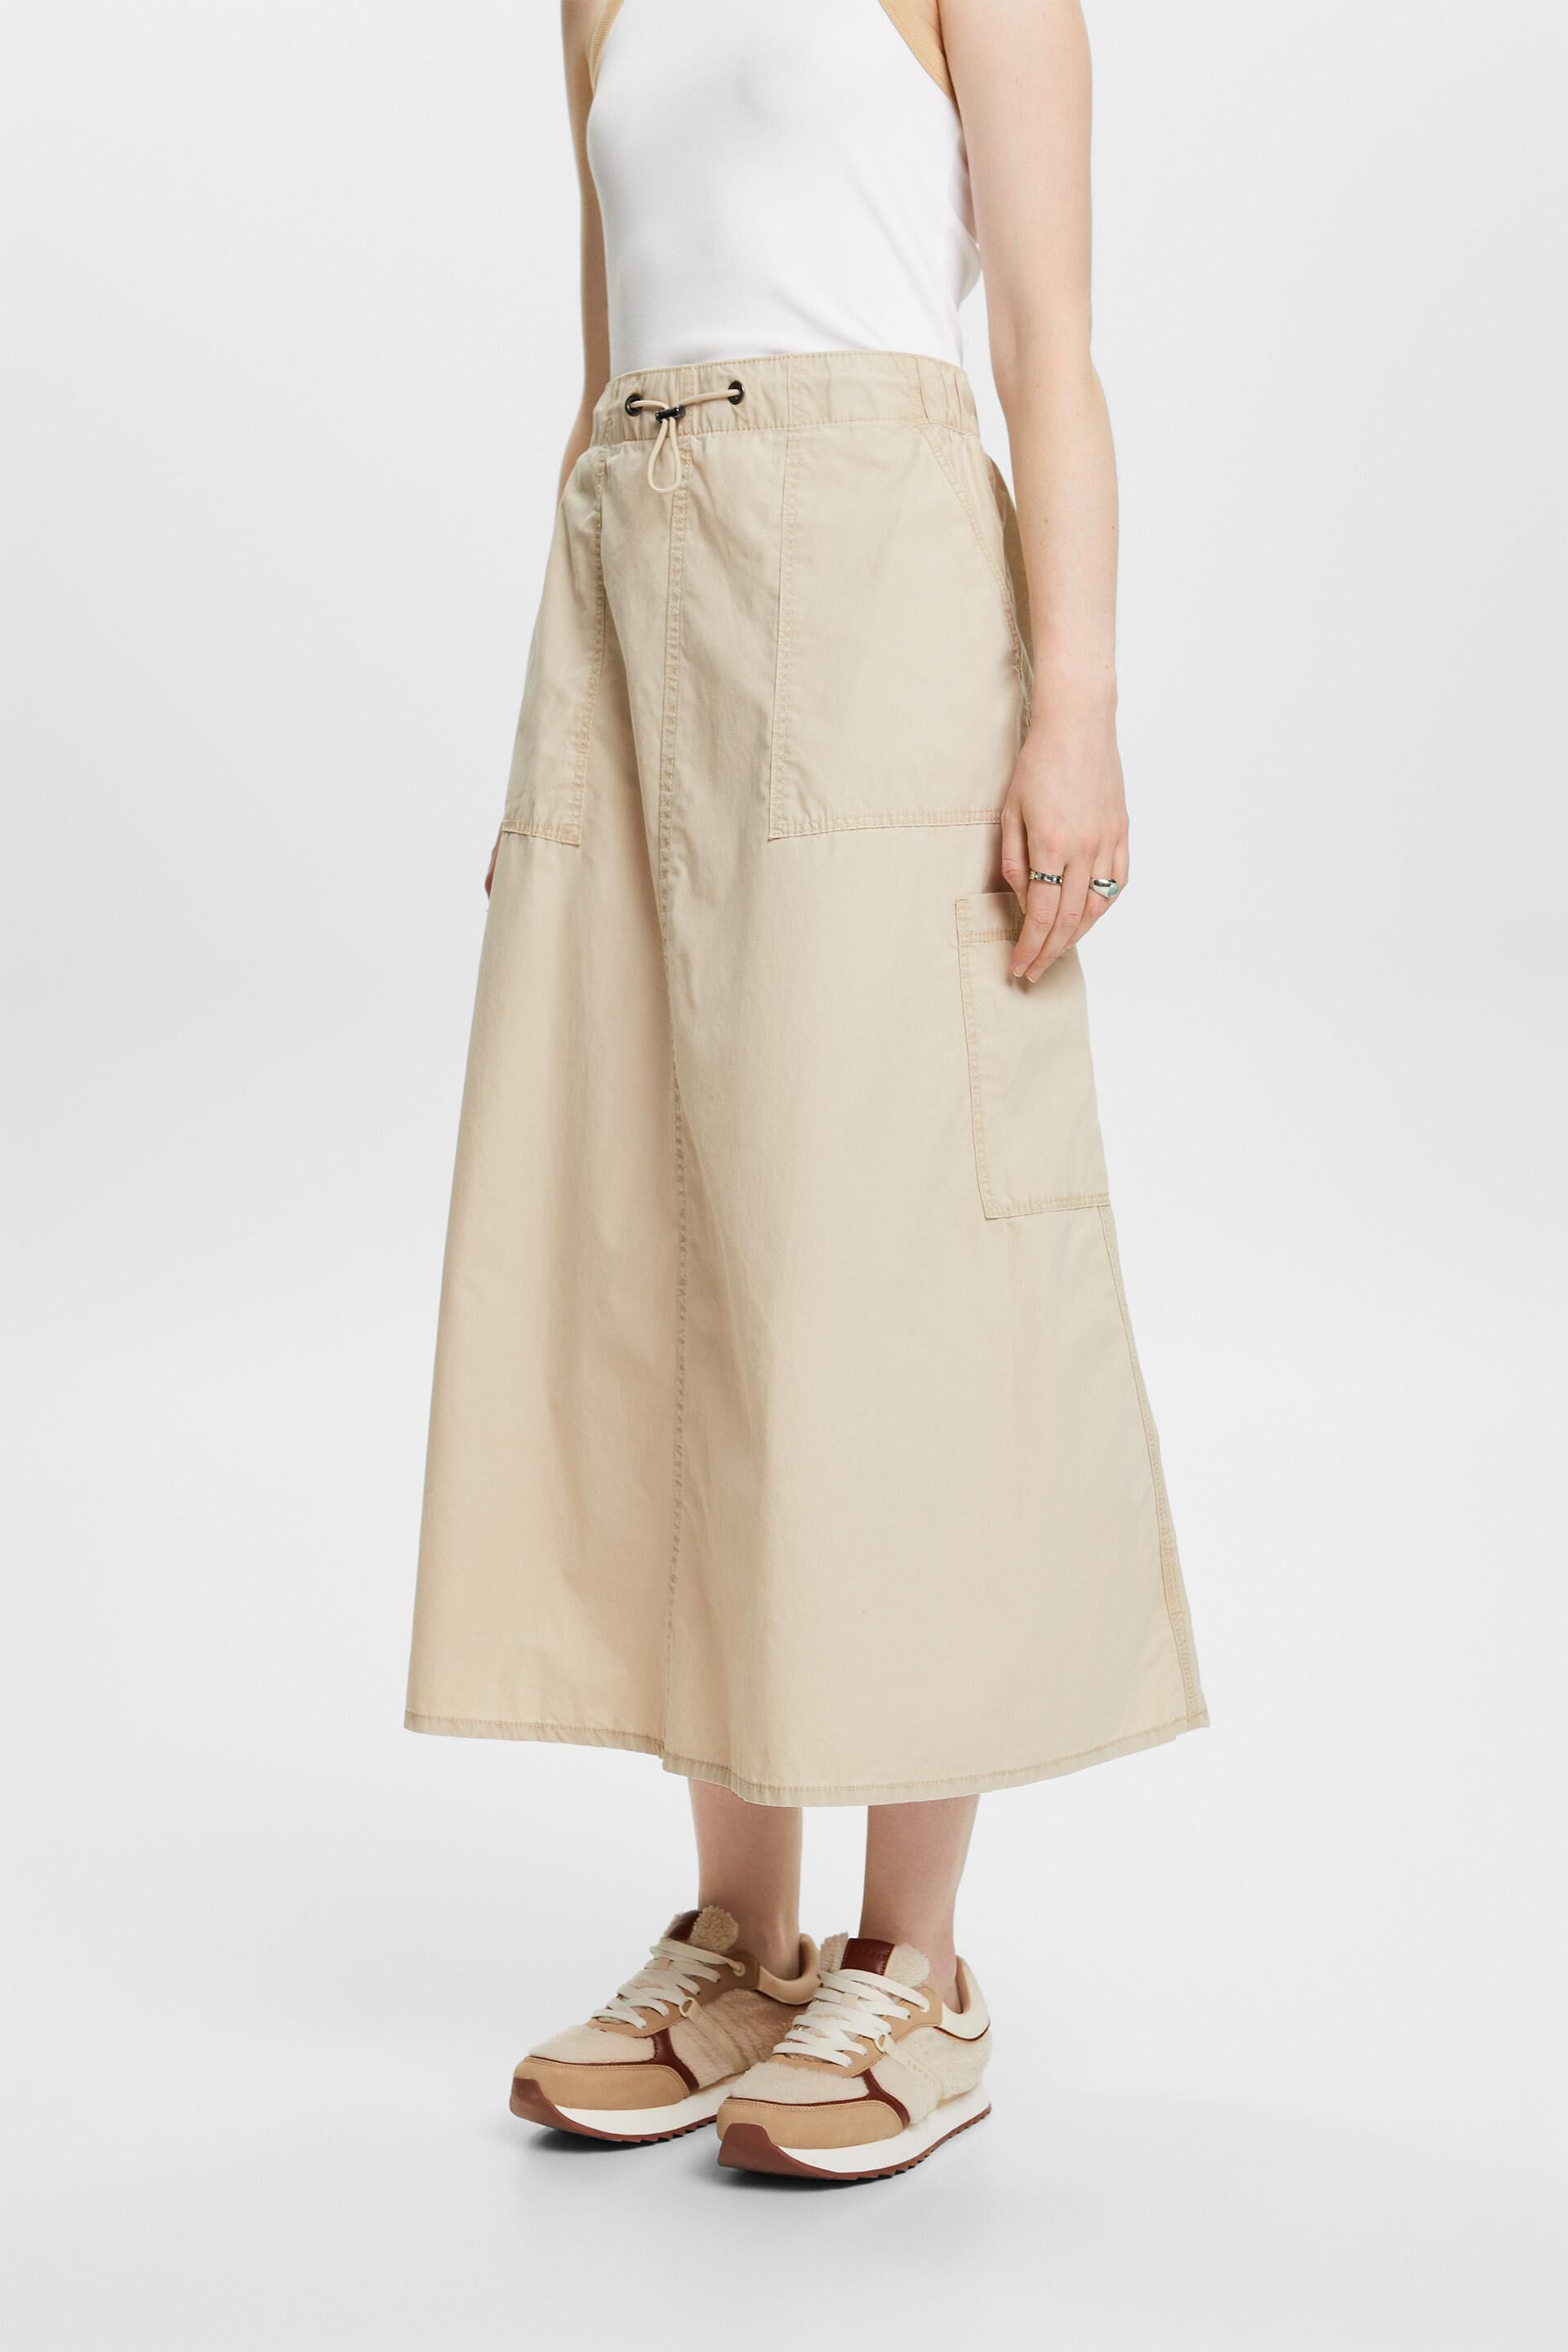 Esprit Damen Pull-on cargo skirt, 100% cotton